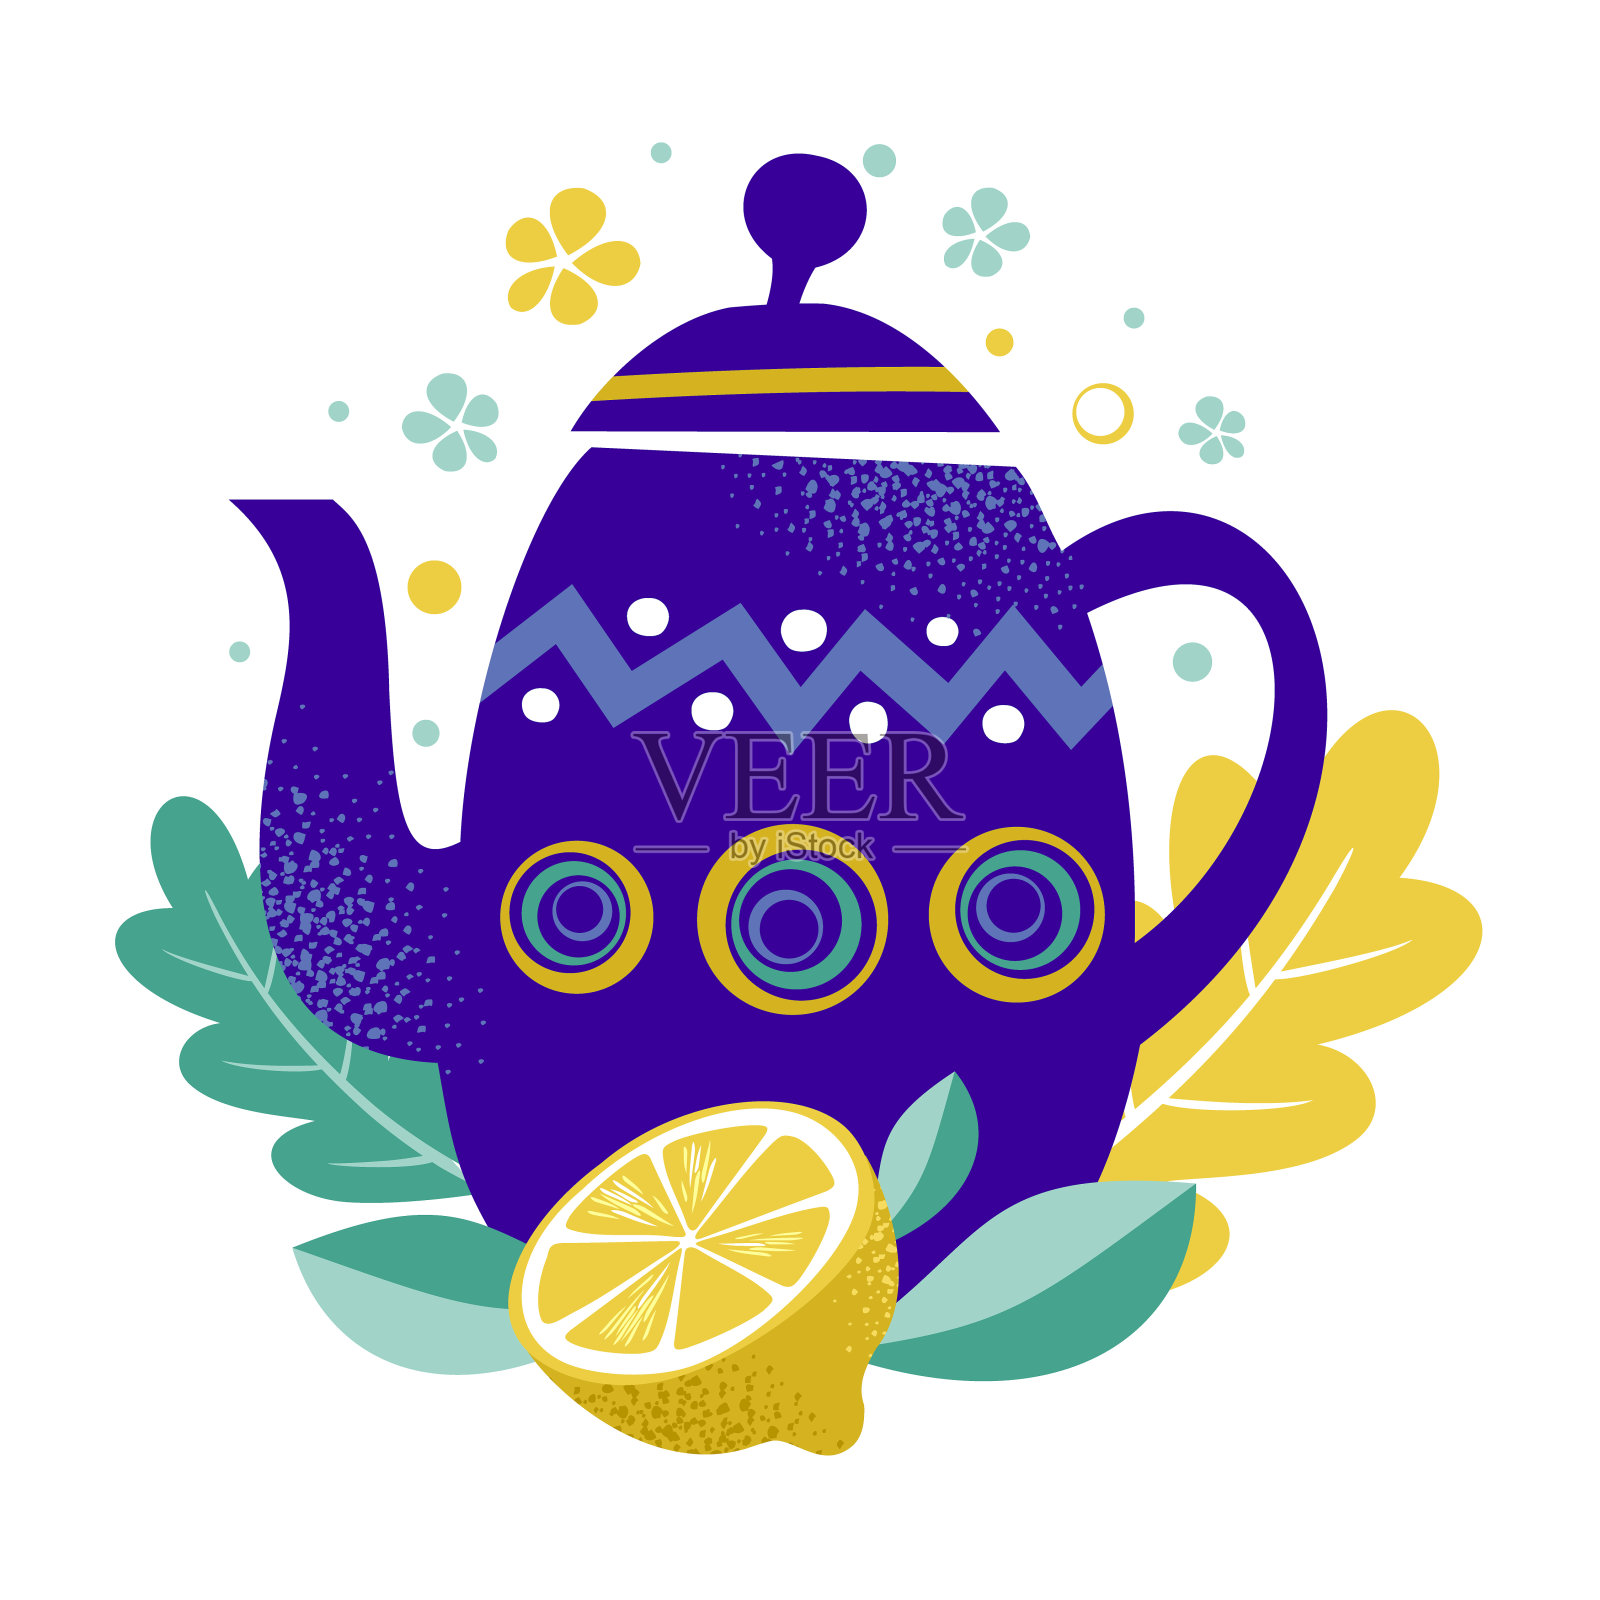 茶时间矢量图。茶壶与花卉设计元素和柠檬水果。蓝色茶壶的叶子和柑橘背景。餐厅，咖啡馆菜单，横幅，传单，卡片，家居装饰。Hygge概念设计元素图片